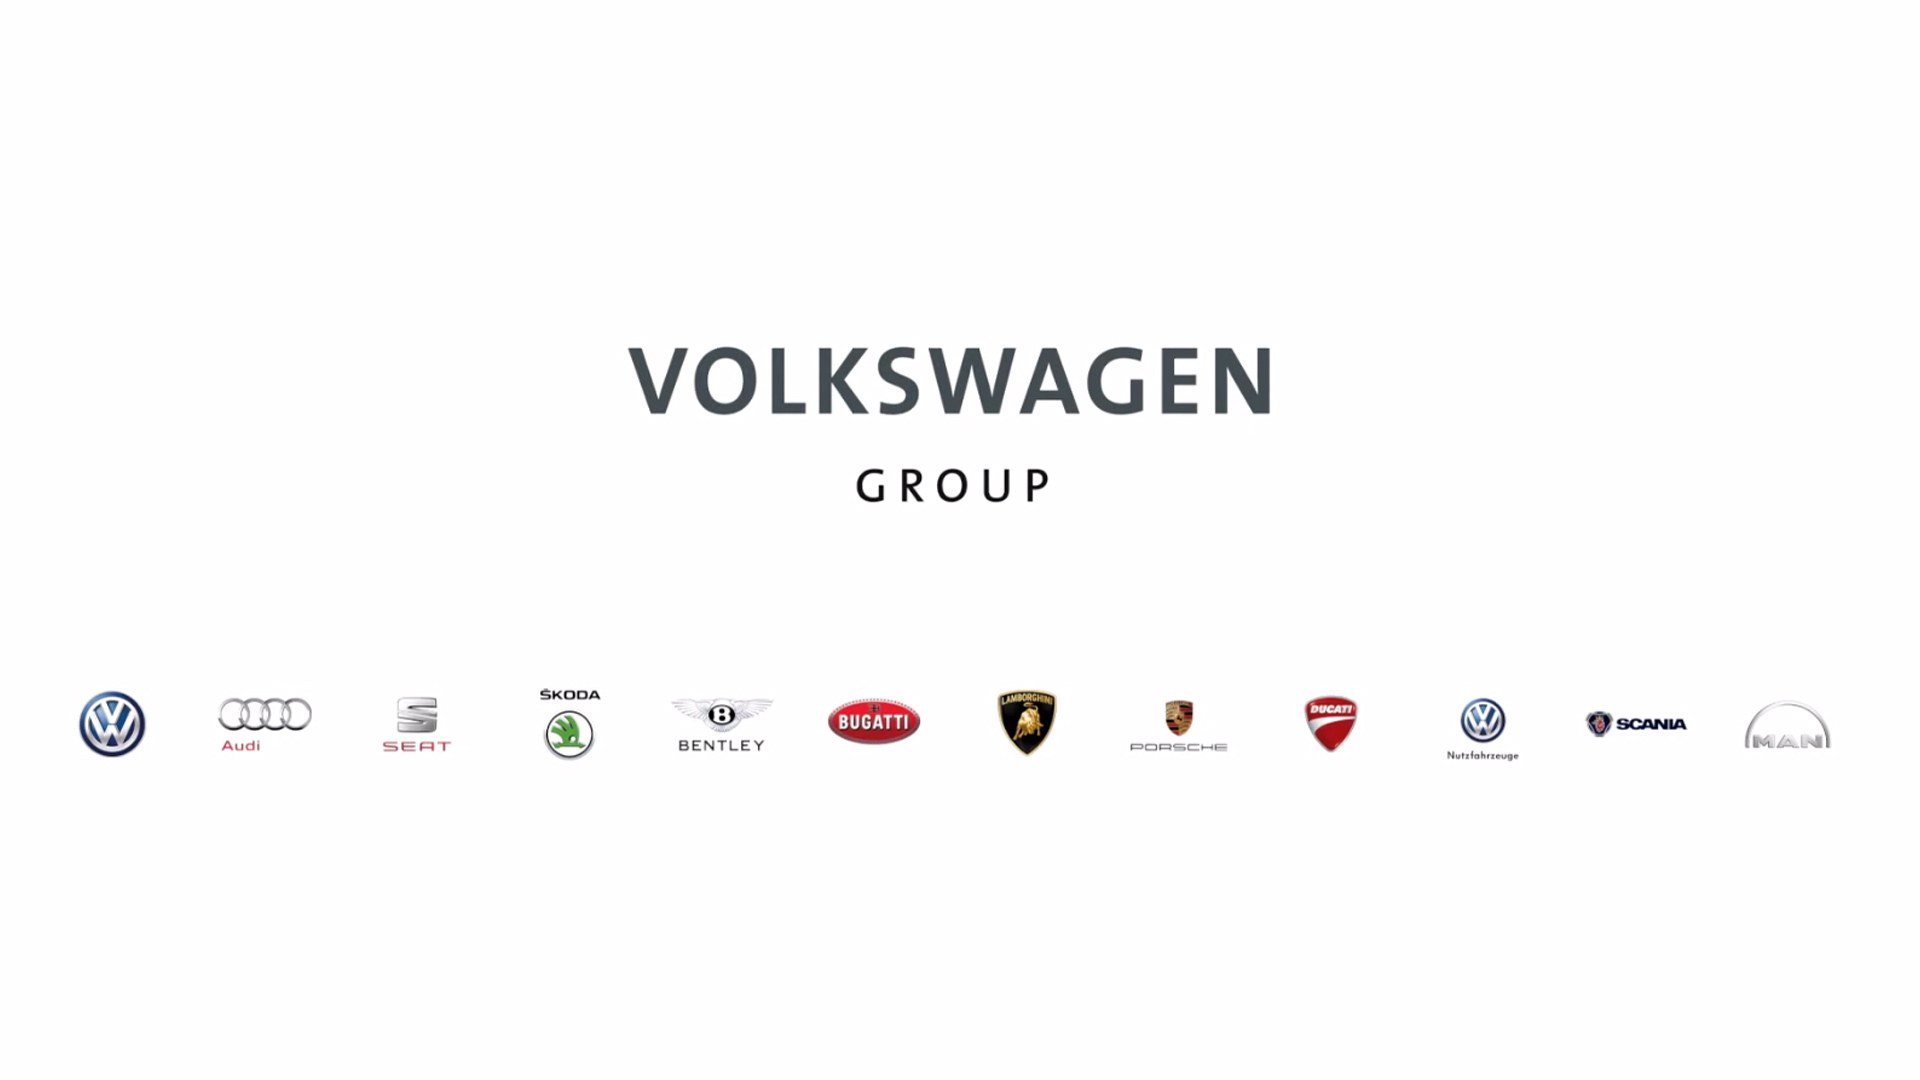 Ensembles des constructeurs du Groupe Volkswagen